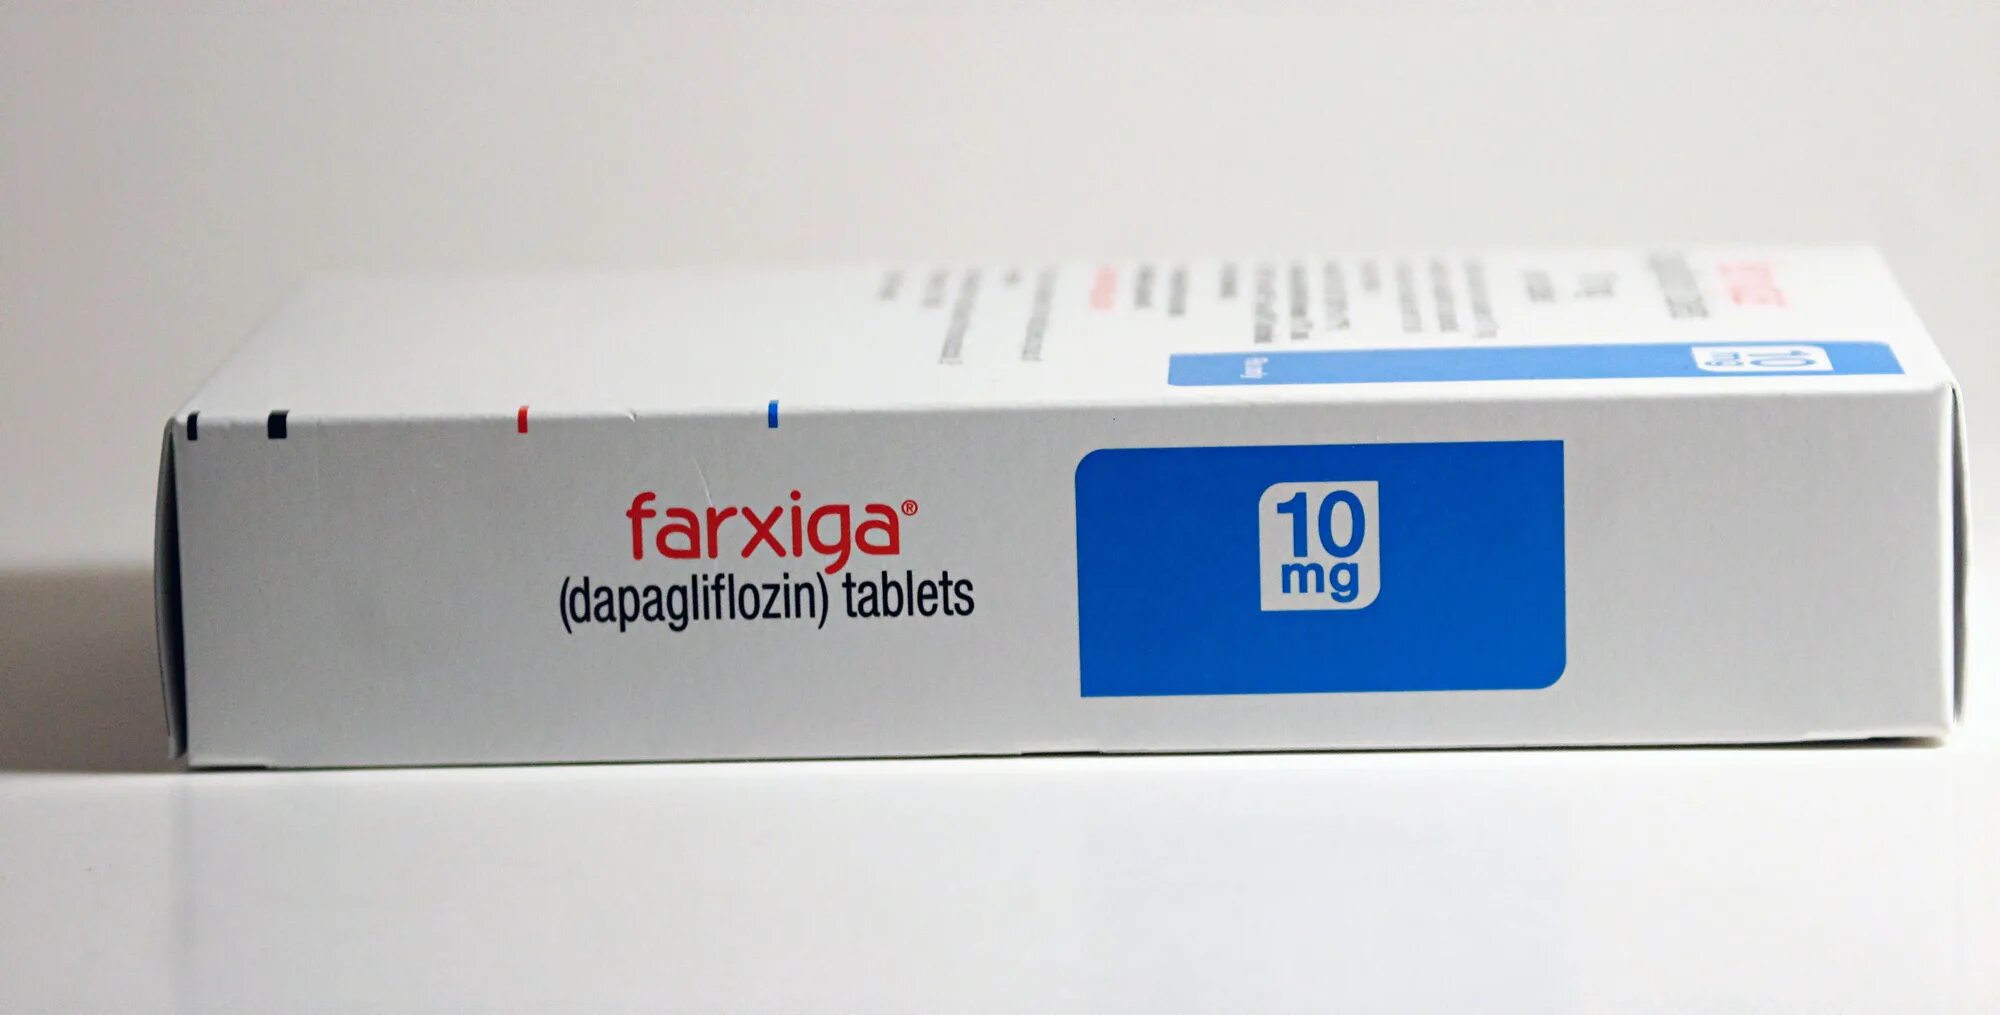 Форсига 10 мг. Dapagliflozin дапаглифлозин. Фарсига таблетки. Дапаглифлозин форсига 10 мг.